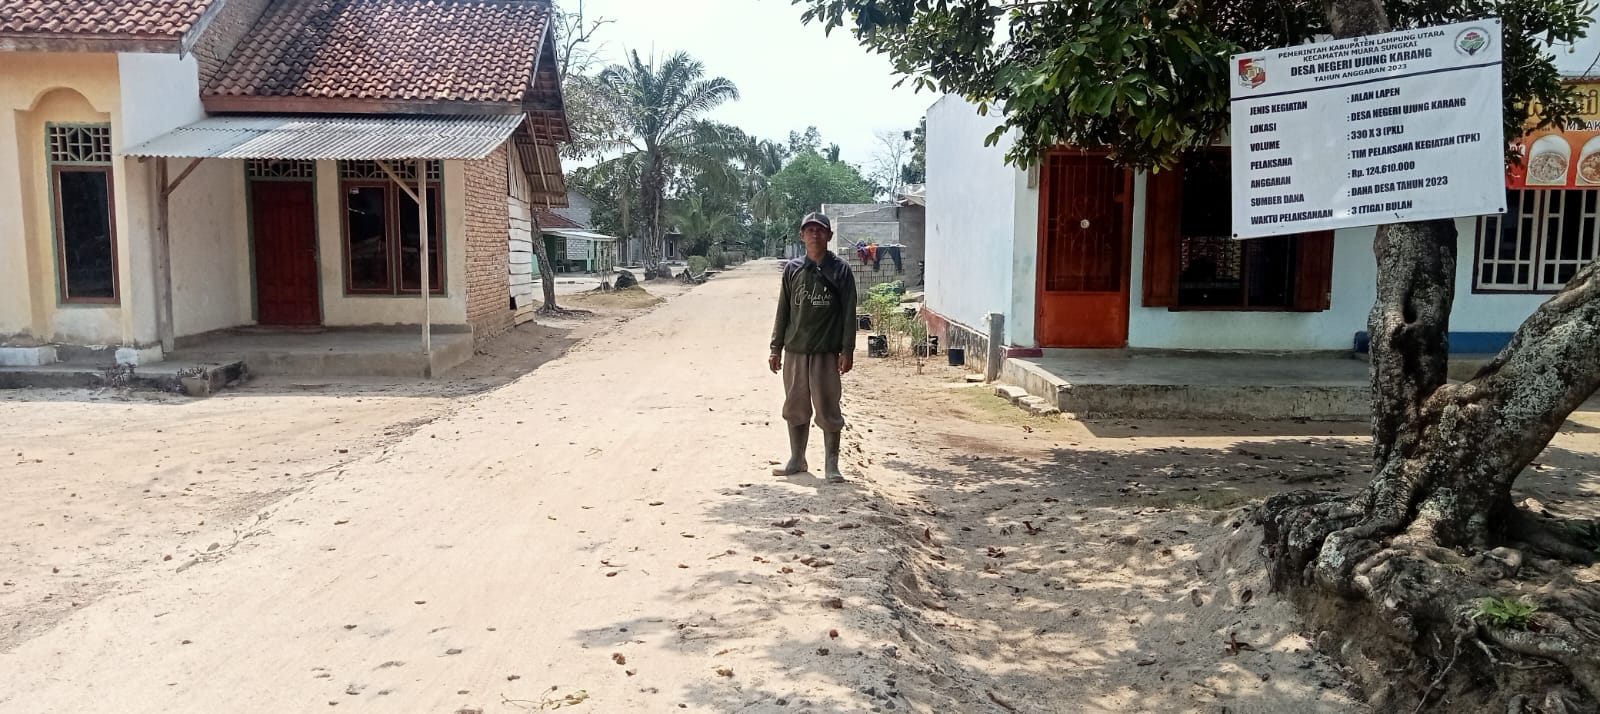 Pembangunan di Desa Negeri Ujung Karang selesai di laksanakan